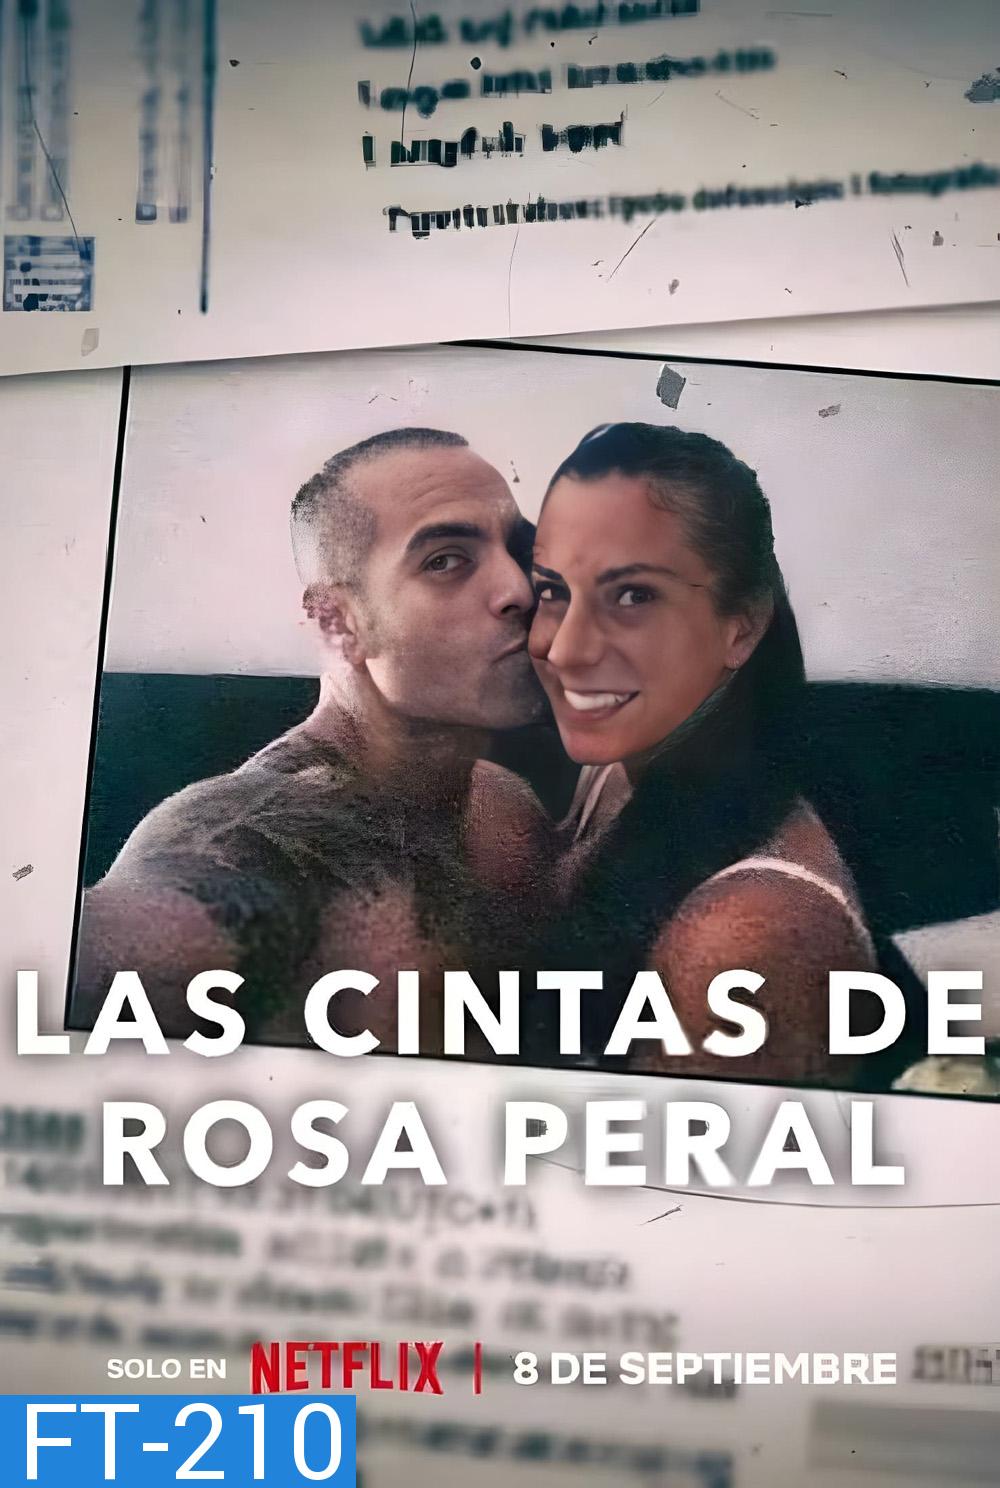 Rosa Perals Tapes (2023) เทปของโรซา เพรัล (ความยาม 1 ชั่วโมง 20 นาที )